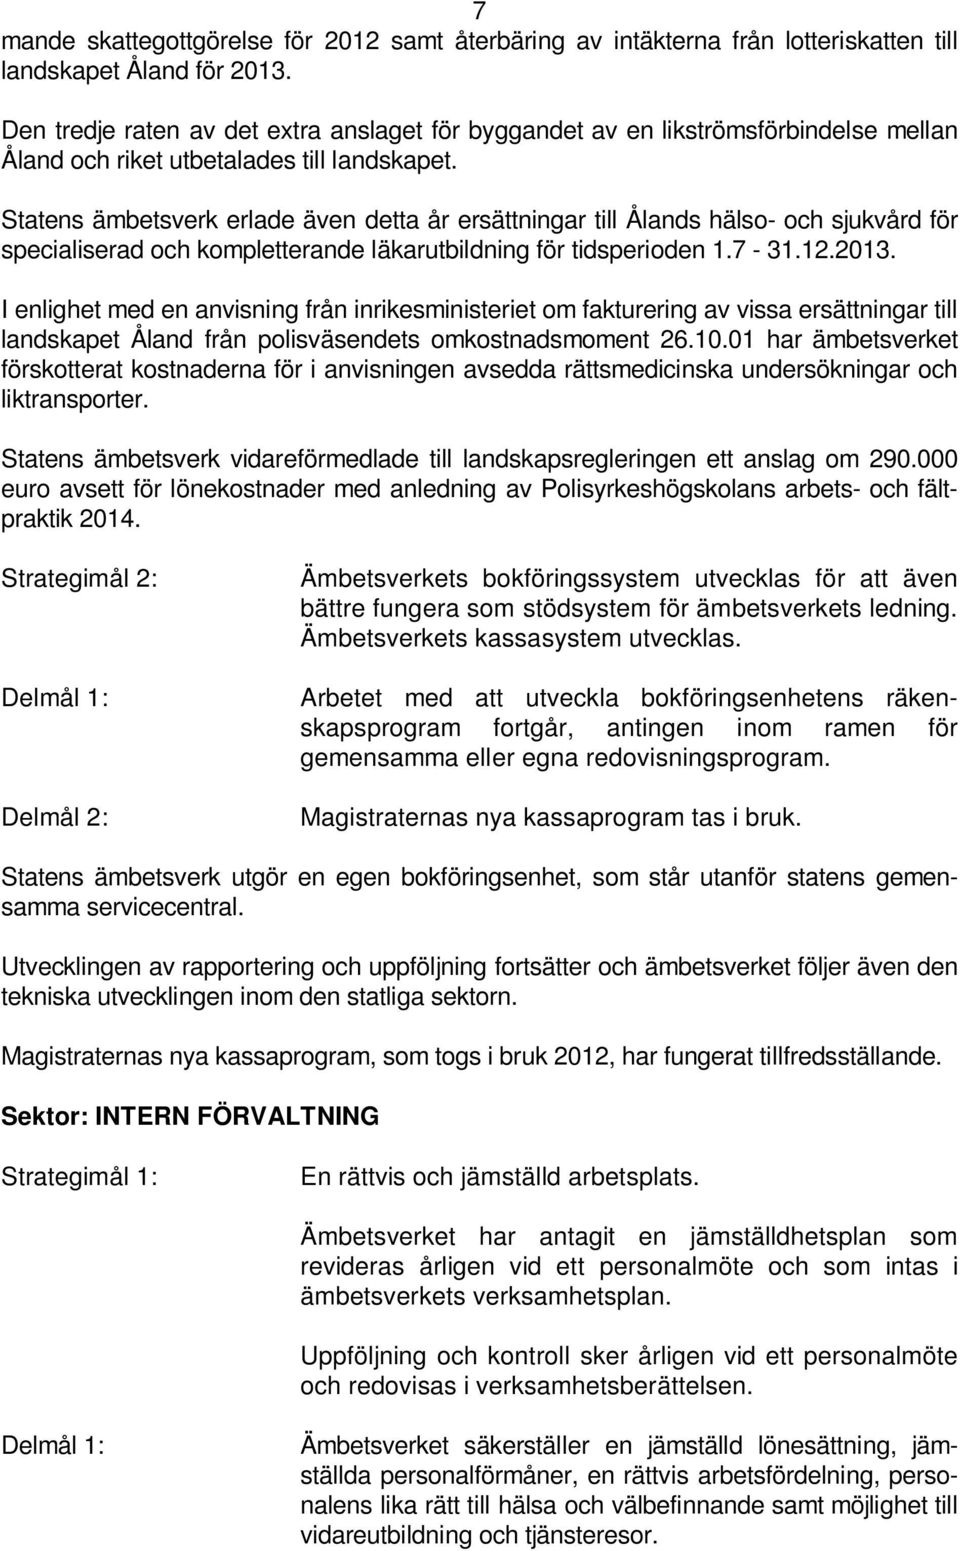 Statens ämbetsverk erlade även detta år ersättningar till Ålands hälso- och sjukvård för specialiserad och kompletterande läkarutbildning för tidsperioden 1.7-31.12.2013.